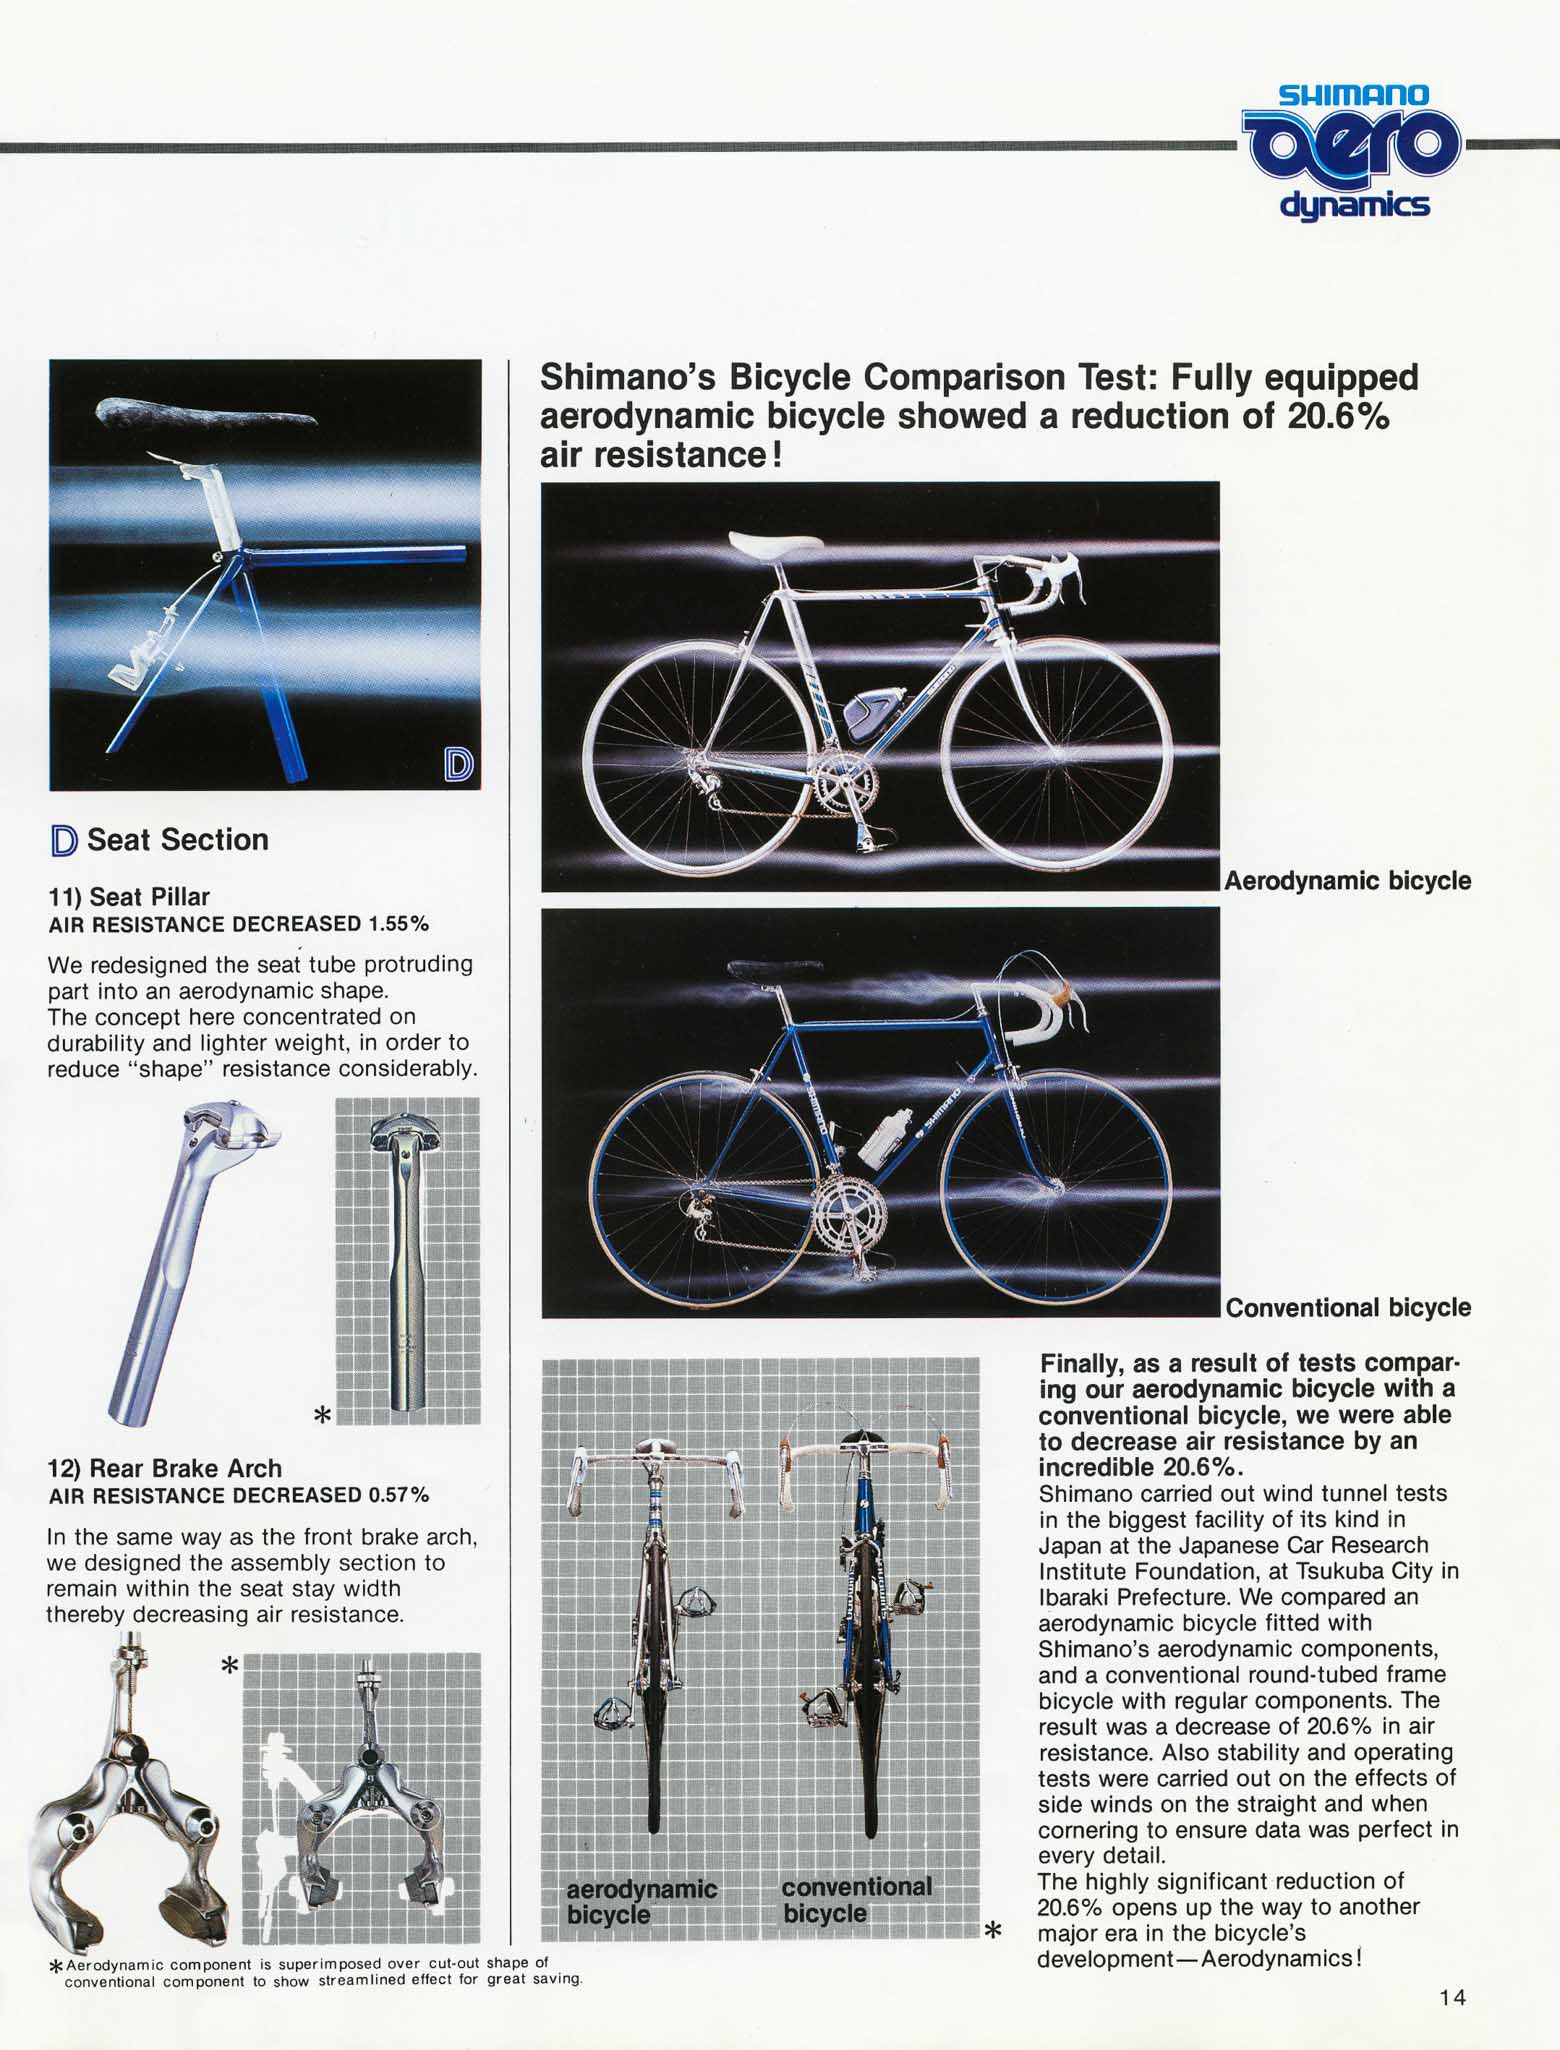 Shimano aero dynamics page 14 main image